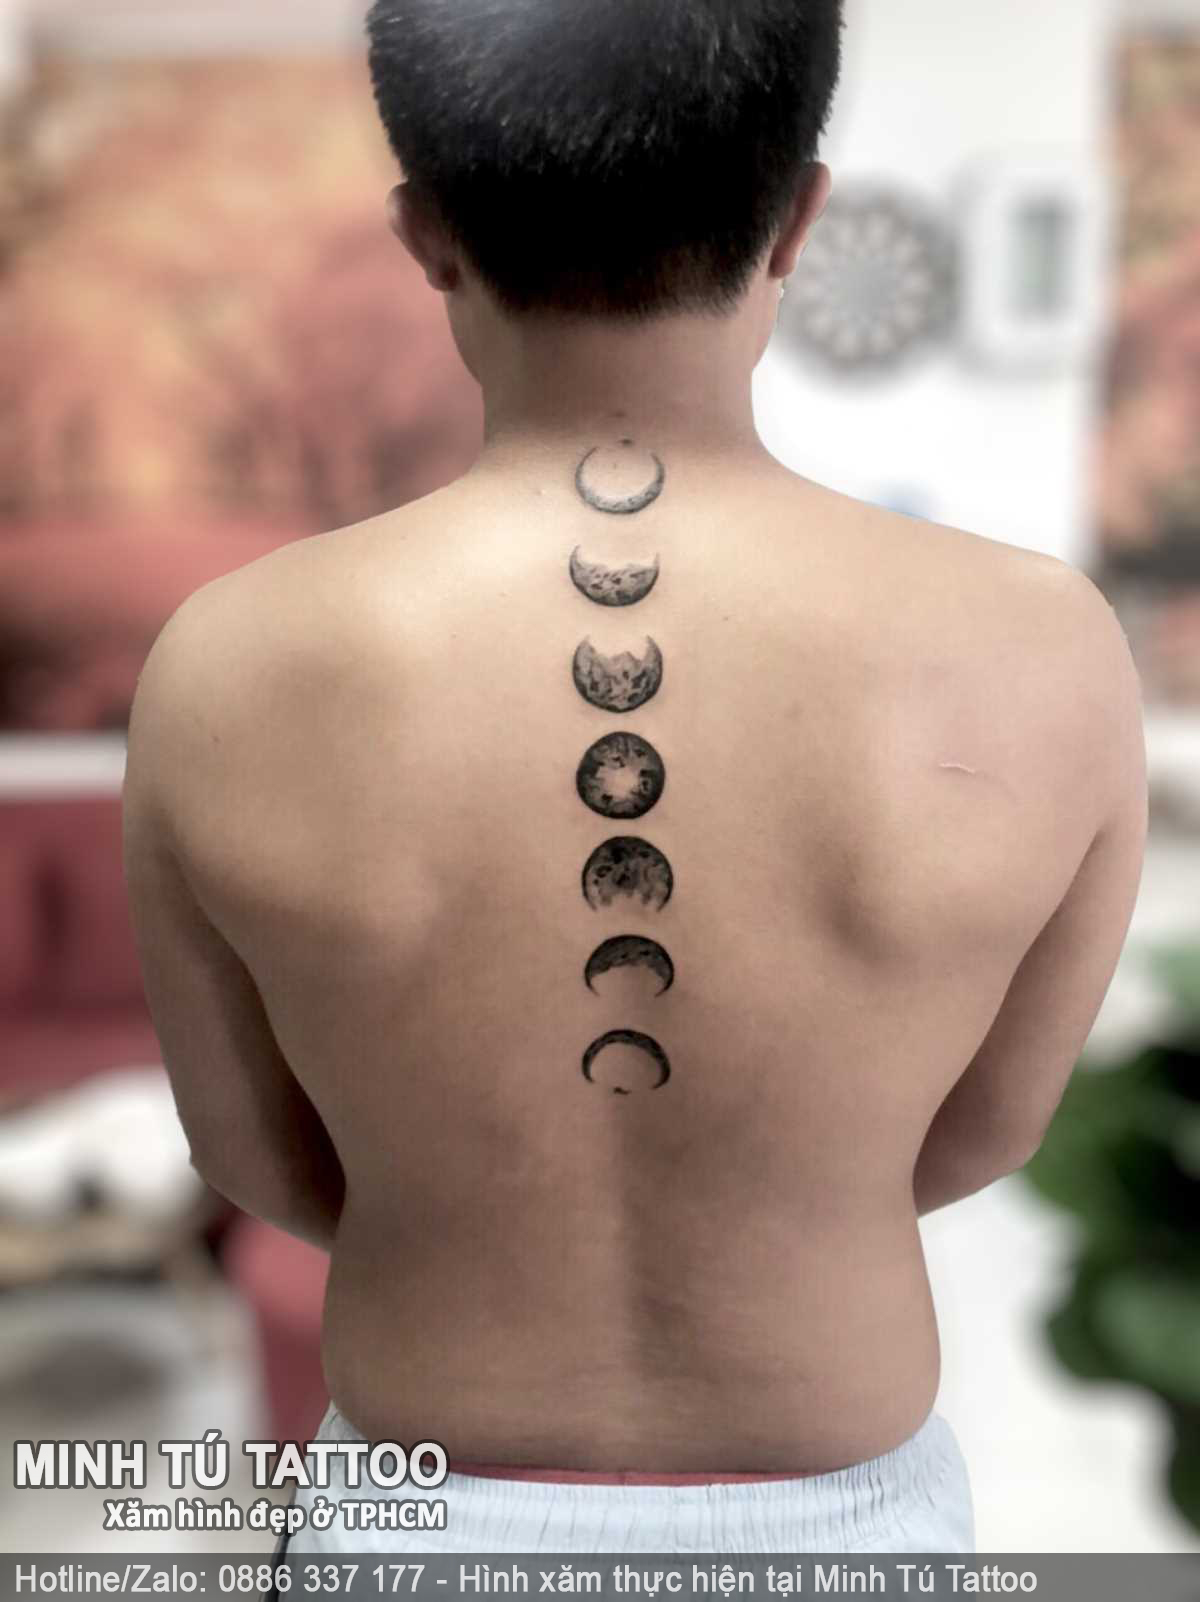 Tác phẩm hình xăm do Minh Tú Tattoo thực hiện 28